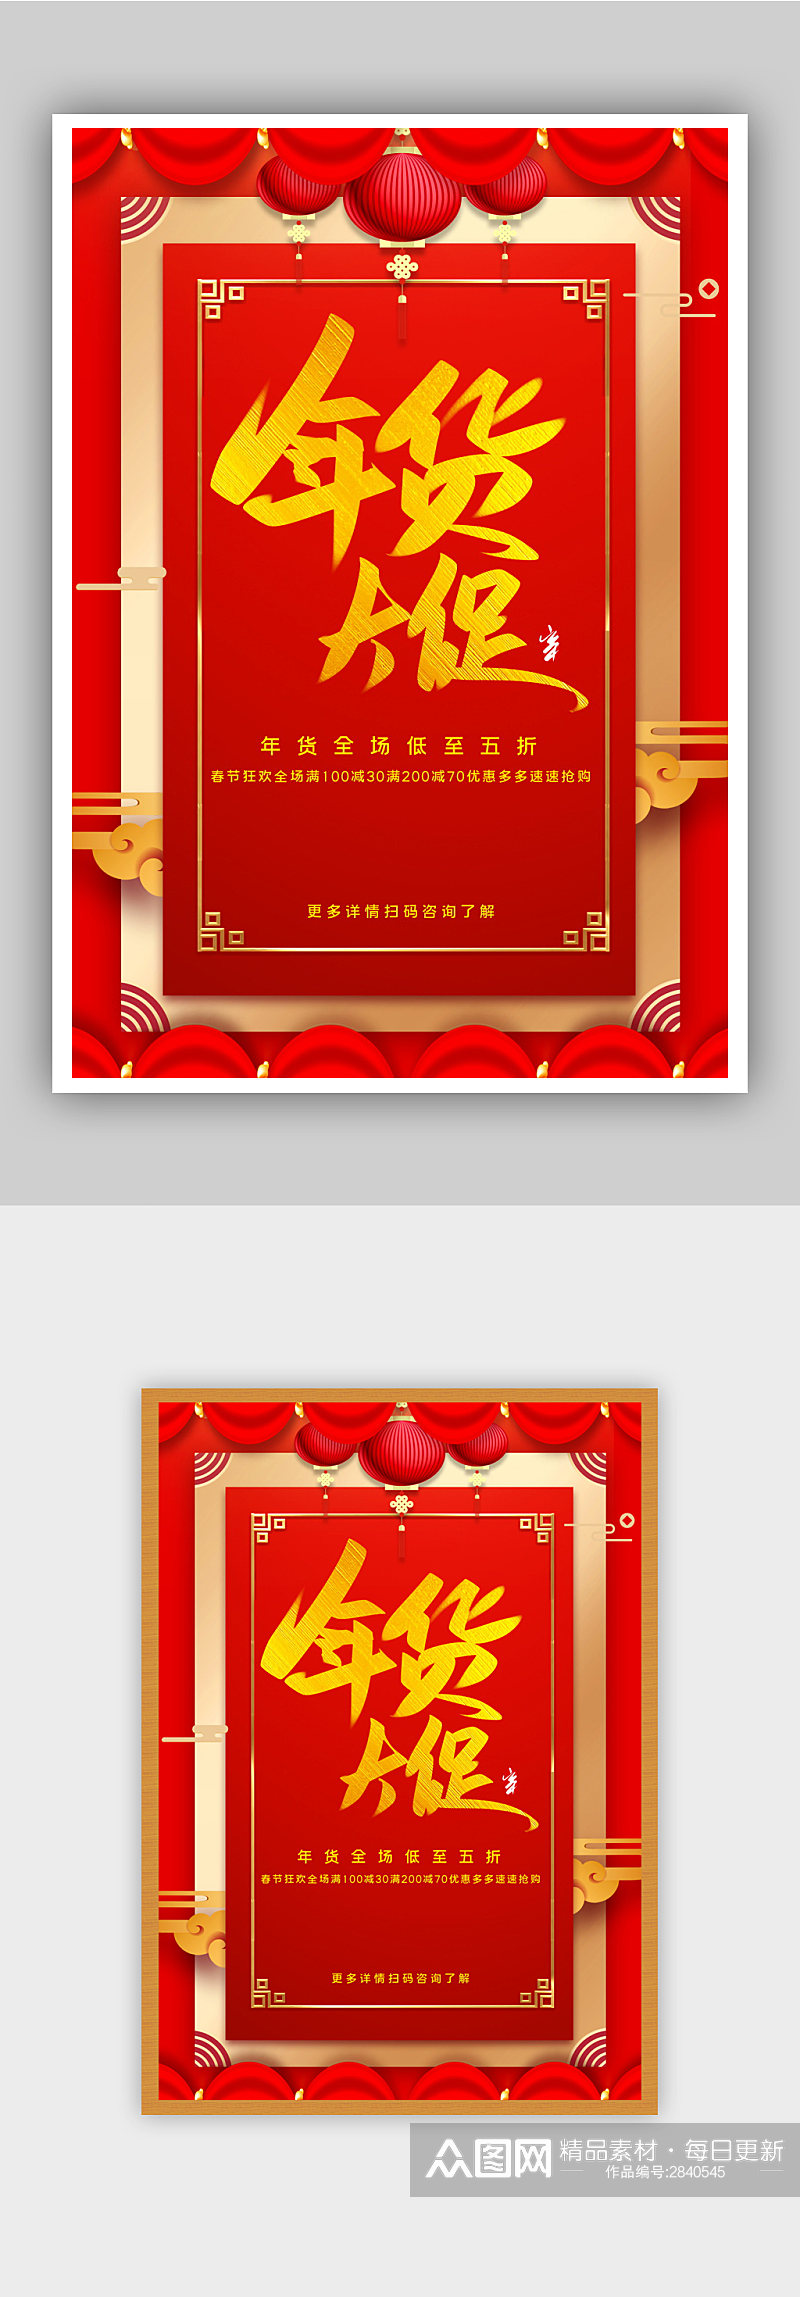 红色中式年货节促销宣传海报素材